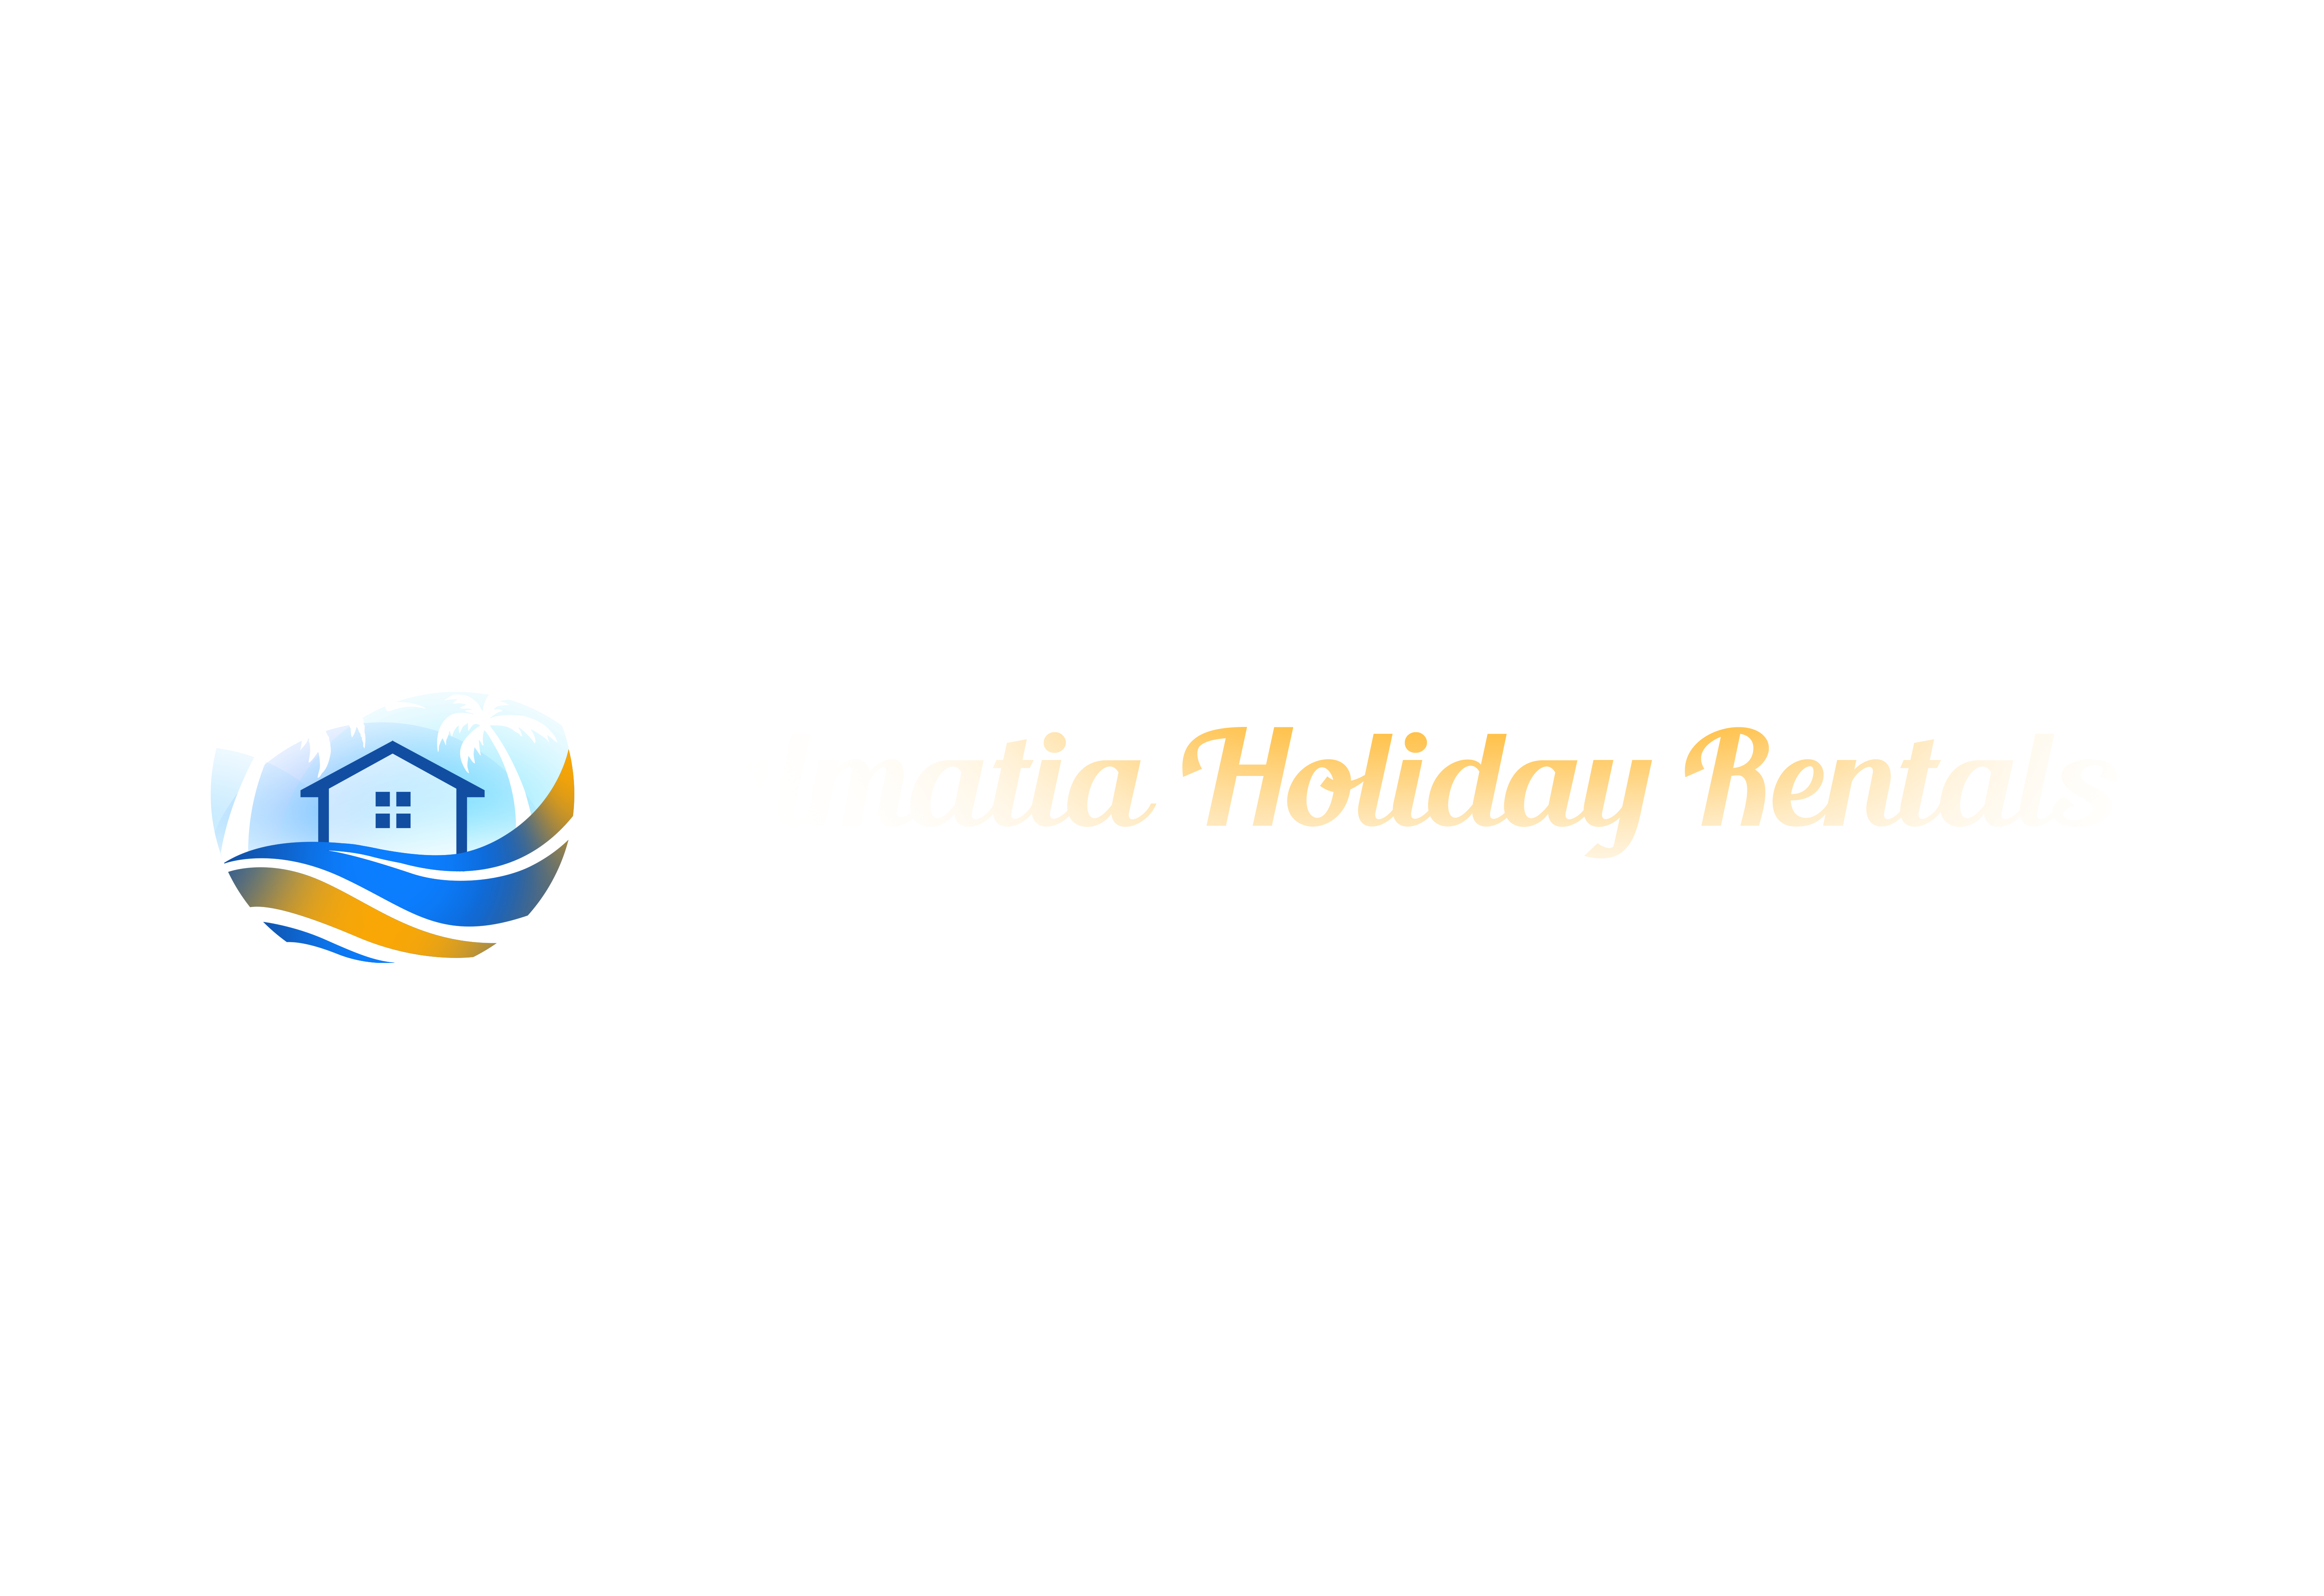 Dalmatia Holiday Rentals